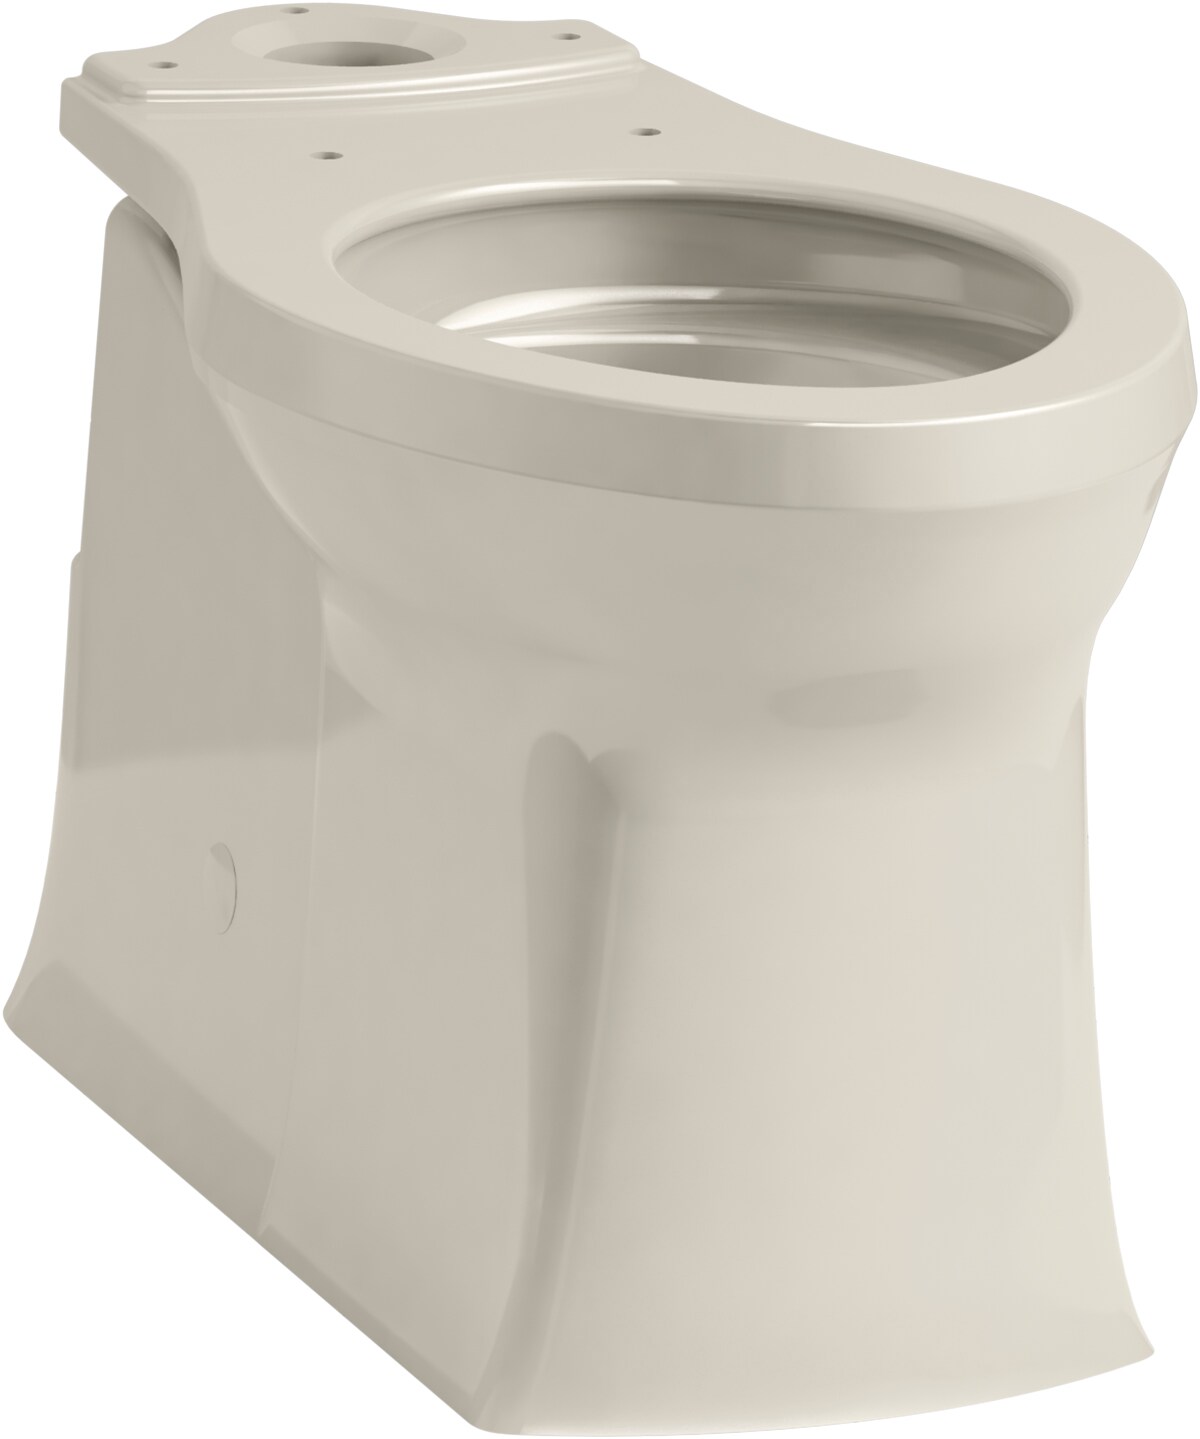 KOHLER Brown Toilet Bowls at Lowes.com